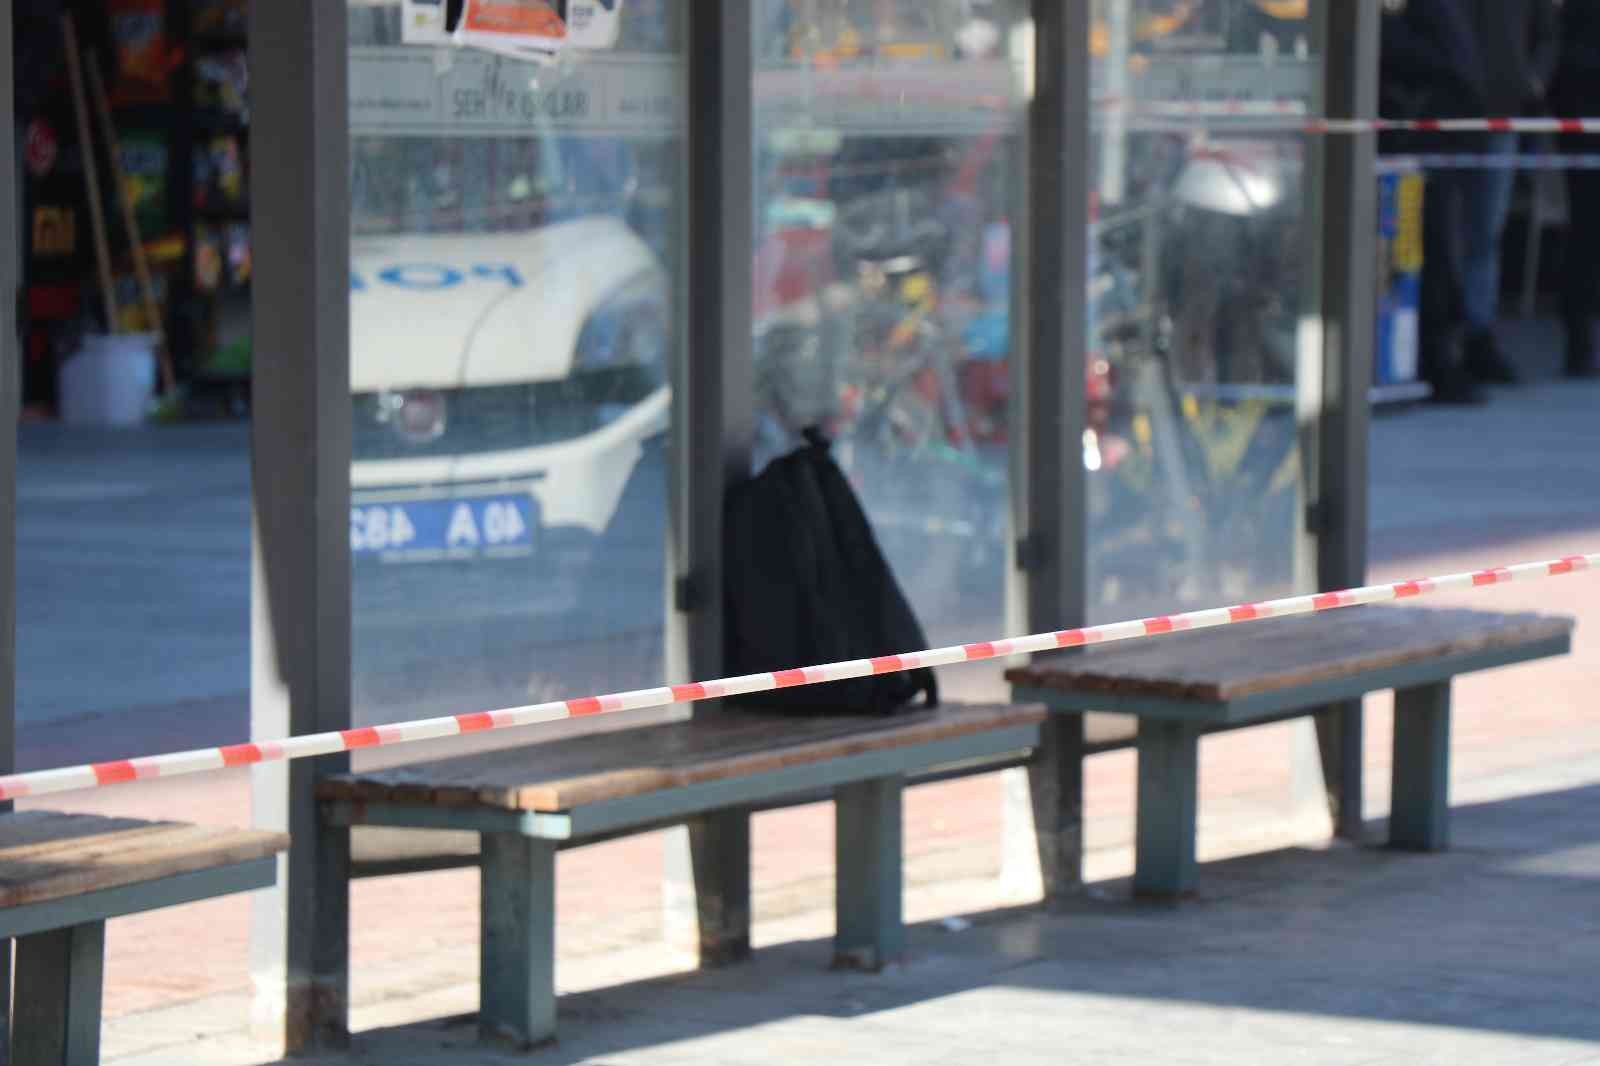 Otobüs durağında unutulan çanta kontrollü patlatıldı #kirsehir